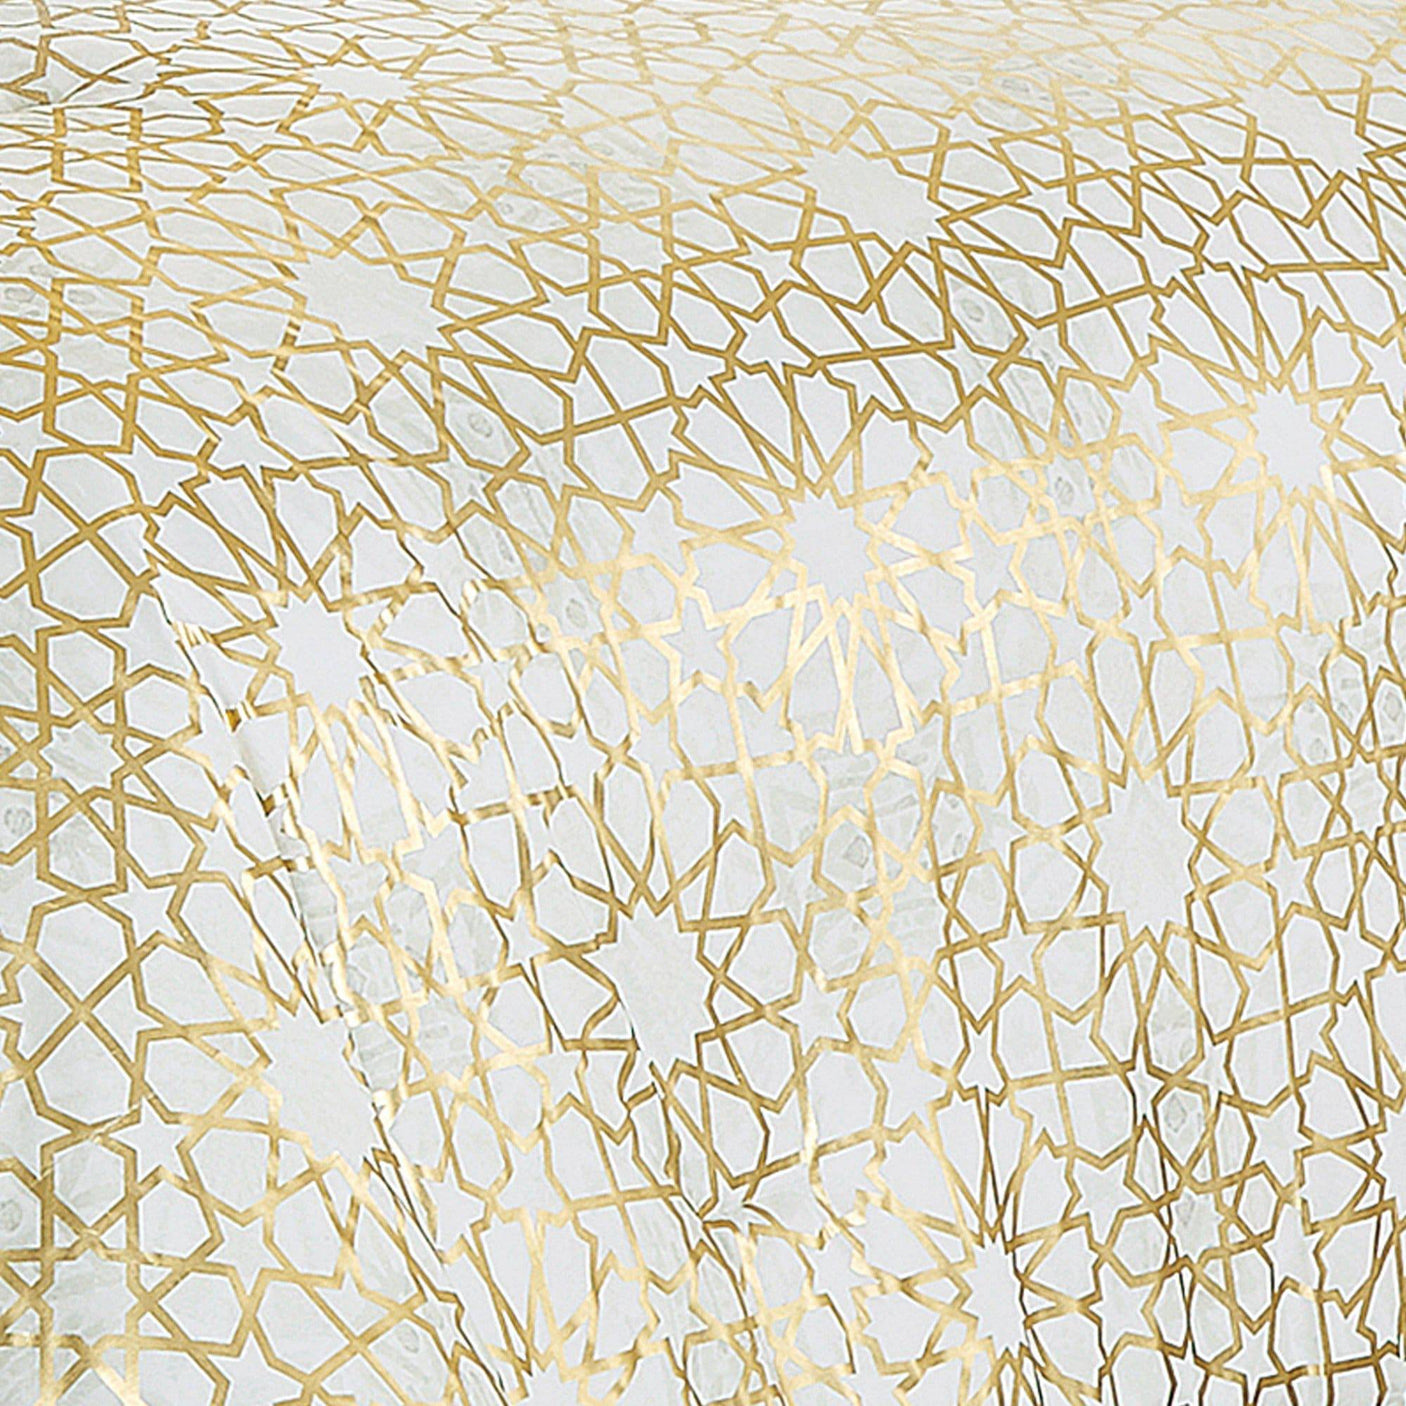 Royal Gold Jacquard Comforter - 6 Piece Set